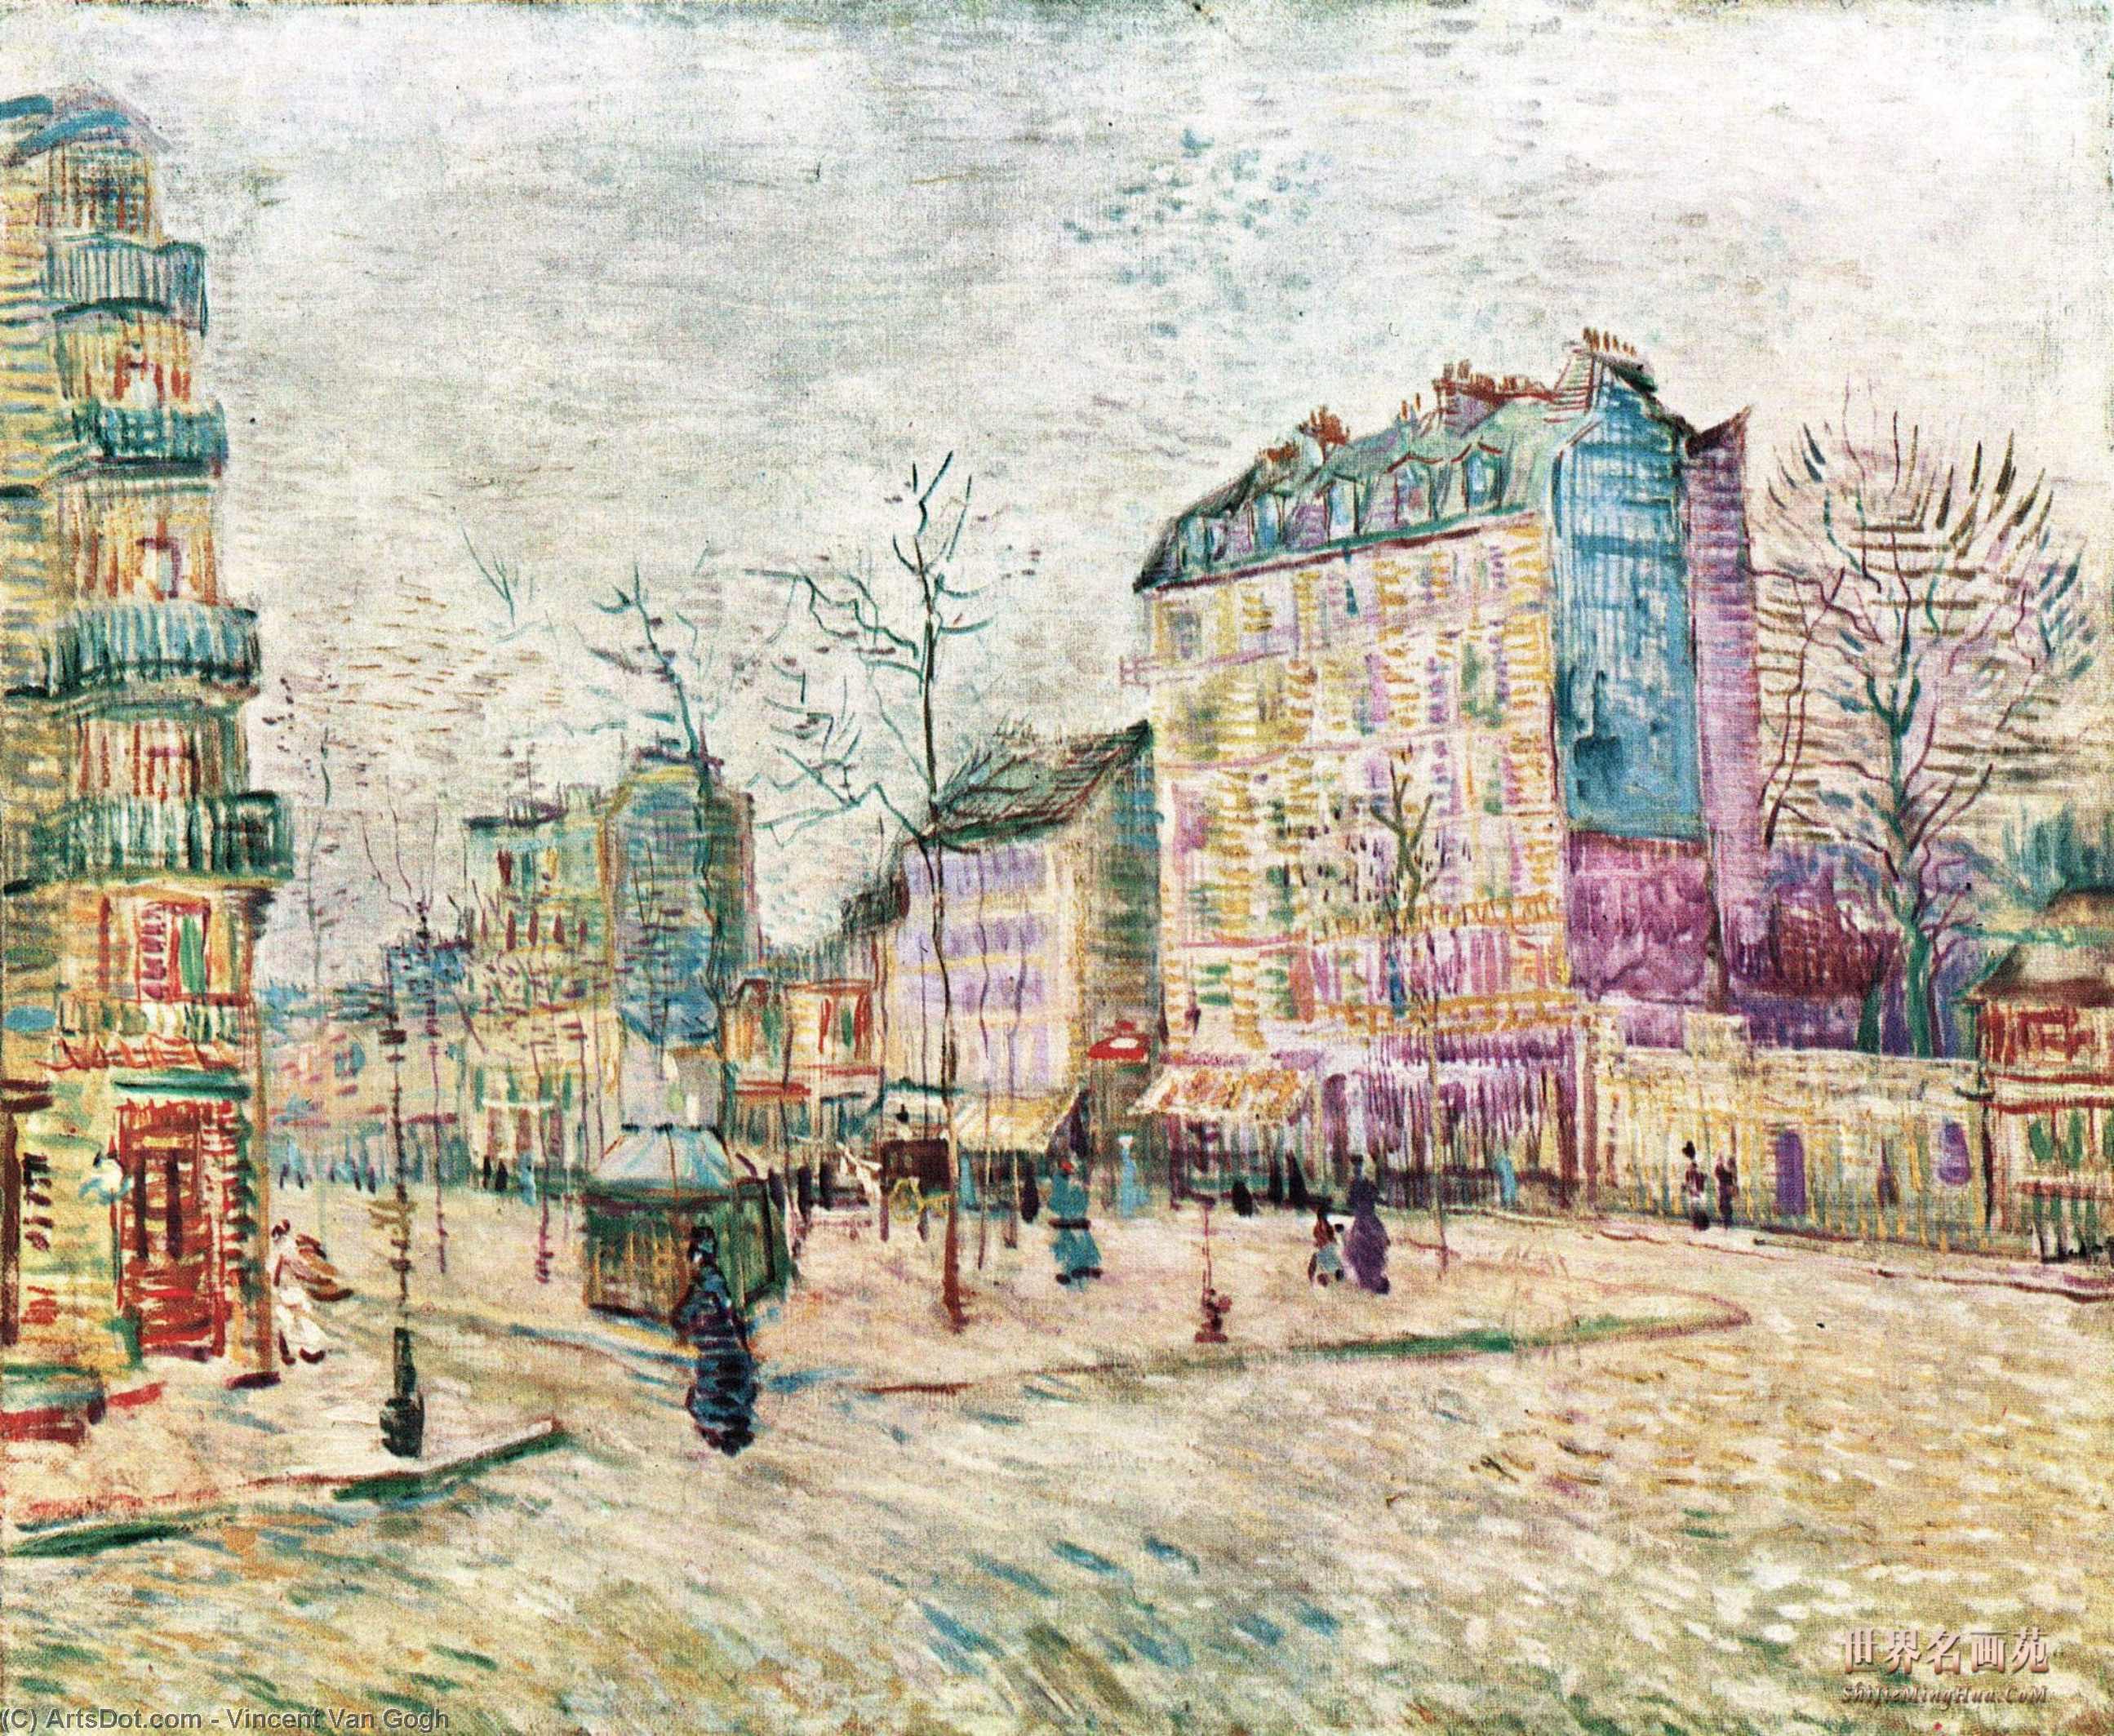 WikiOO.org - Encyclopedia of Fine Arts - Malba, Artwork Vincent Van Gogh - Boulevard de Clichy